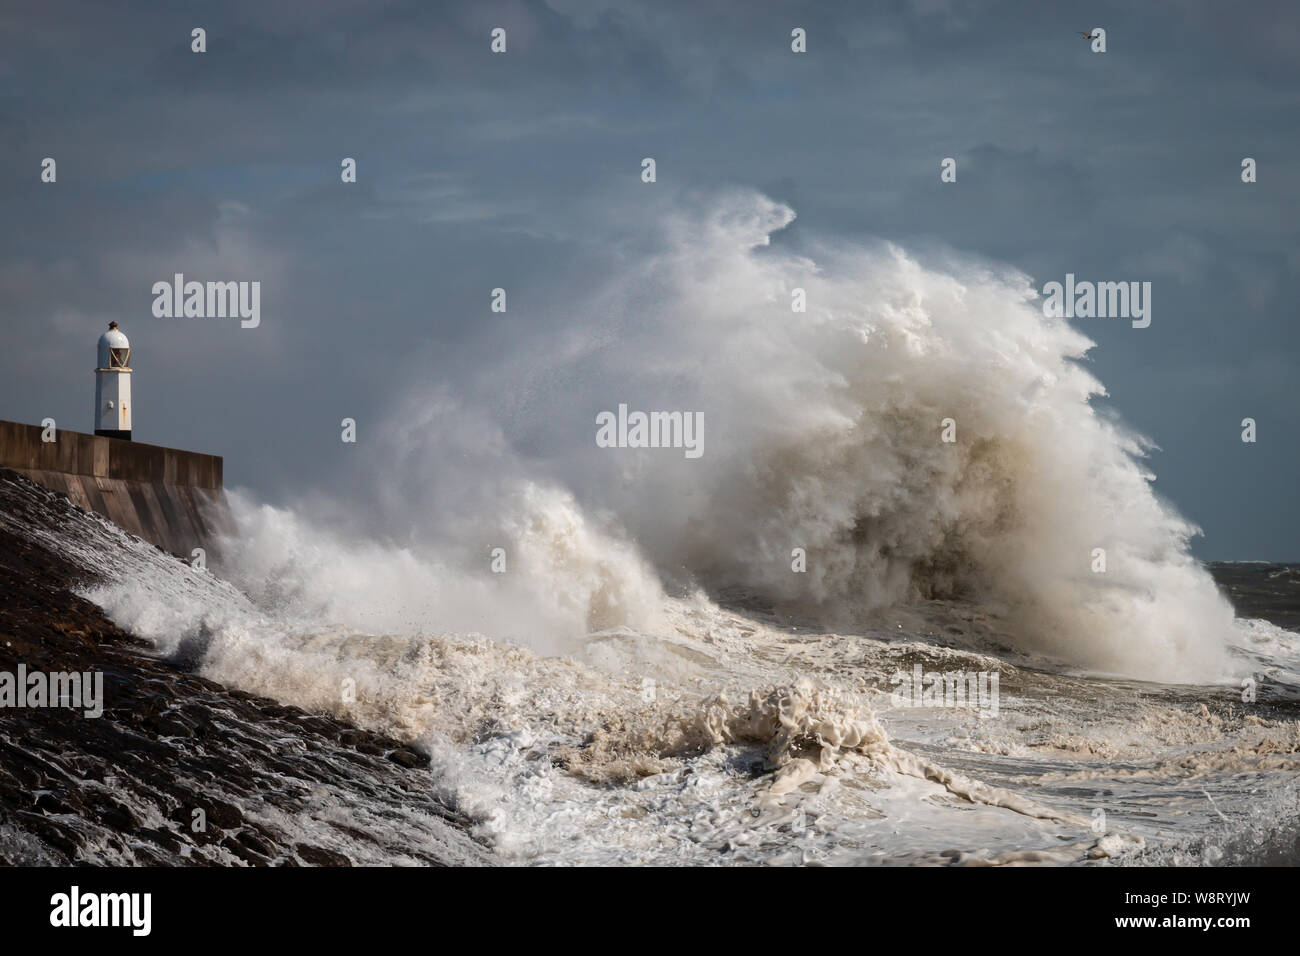 Enormi onde accanto a un faro su un giorno di tempesta (Porthcawl, Wales, Regno Unito) Foto Stock